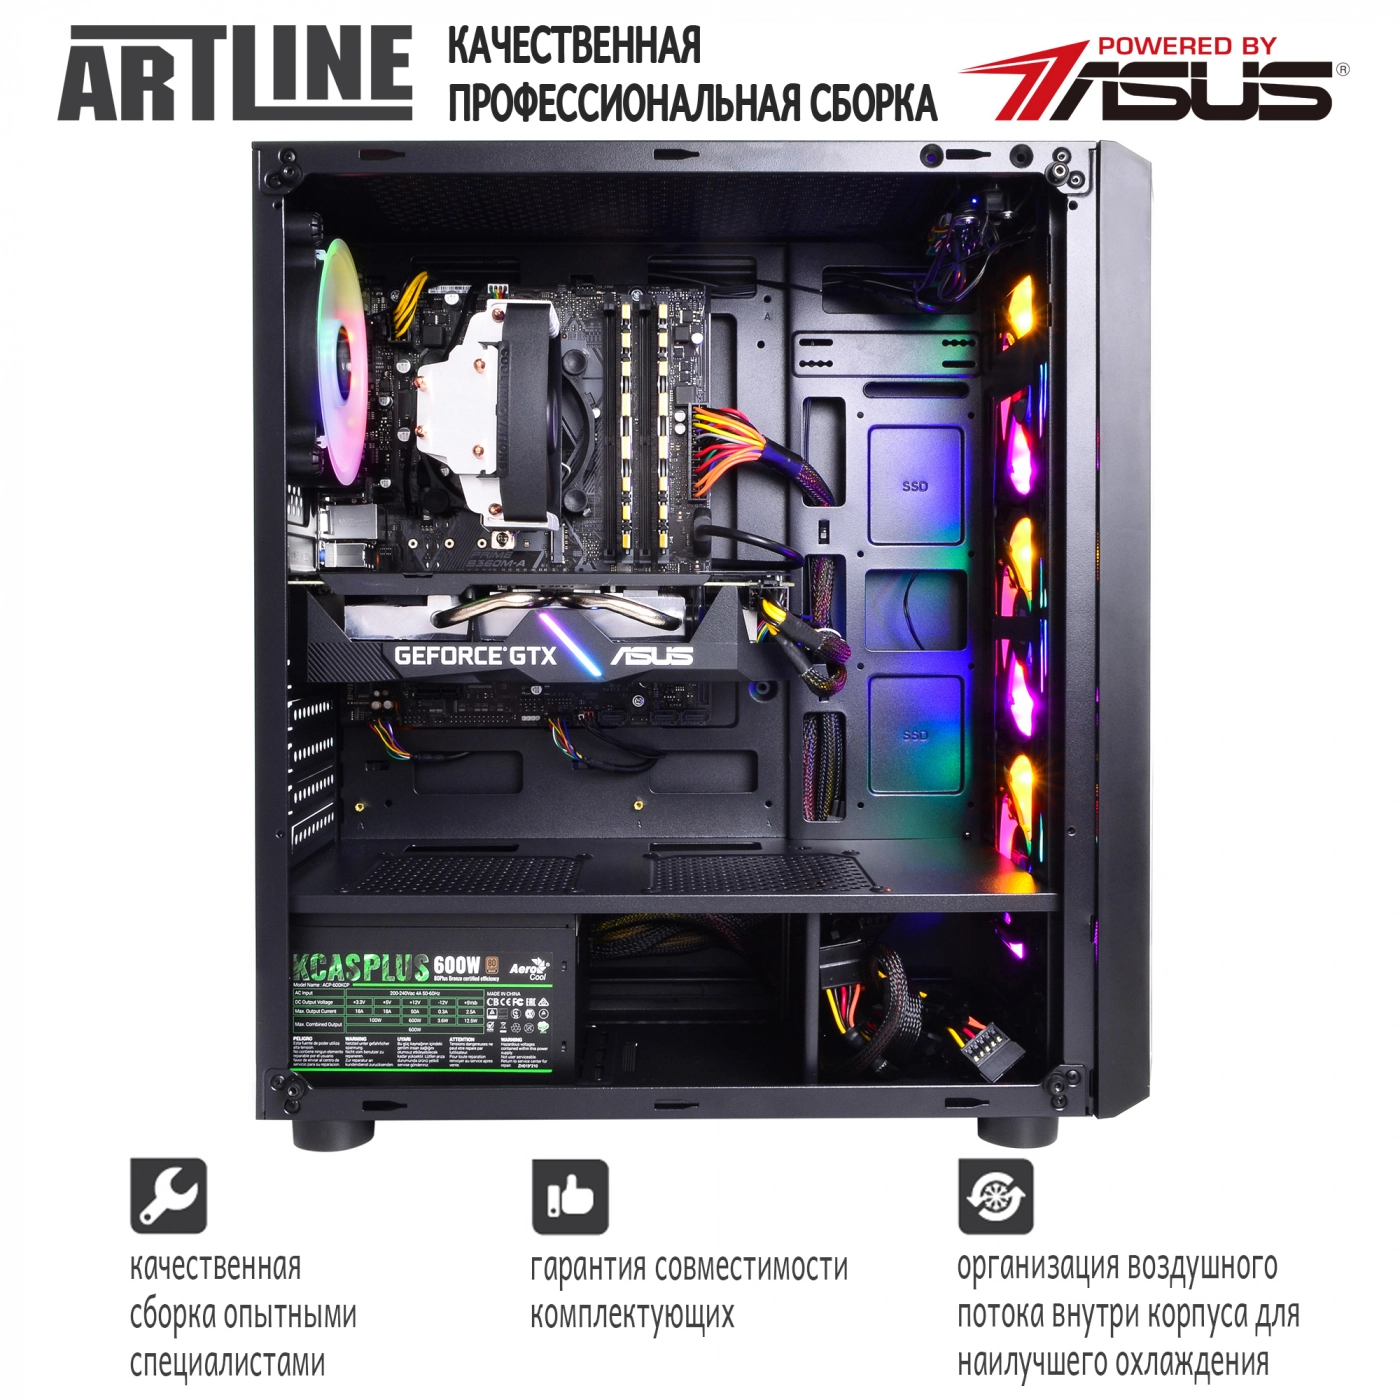 Купить Компьютер ARTLINE Gaming X39v32 - фото 8